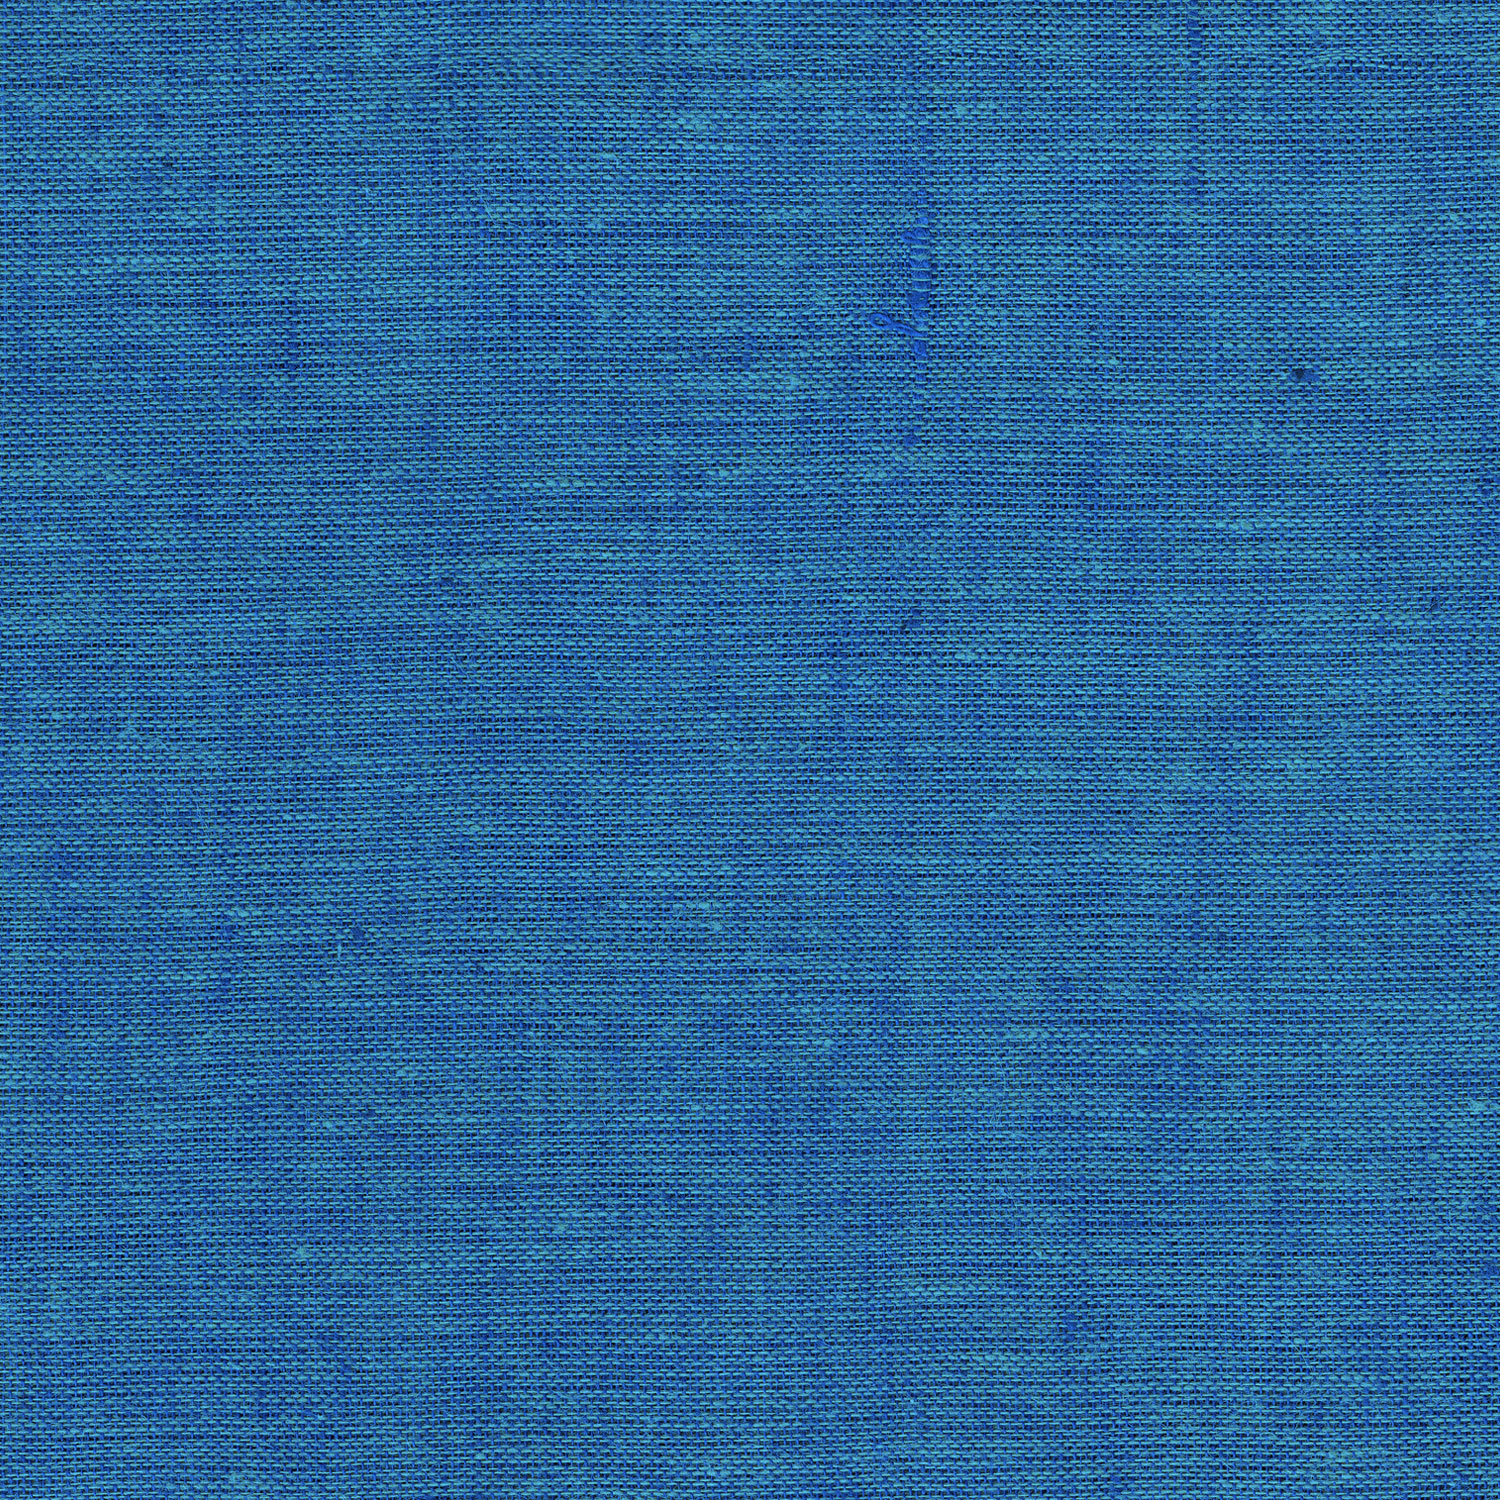 fondo de pantalla de mezclilla azul,azul,agua,turquesa,azul cobalto,azul eléctrico